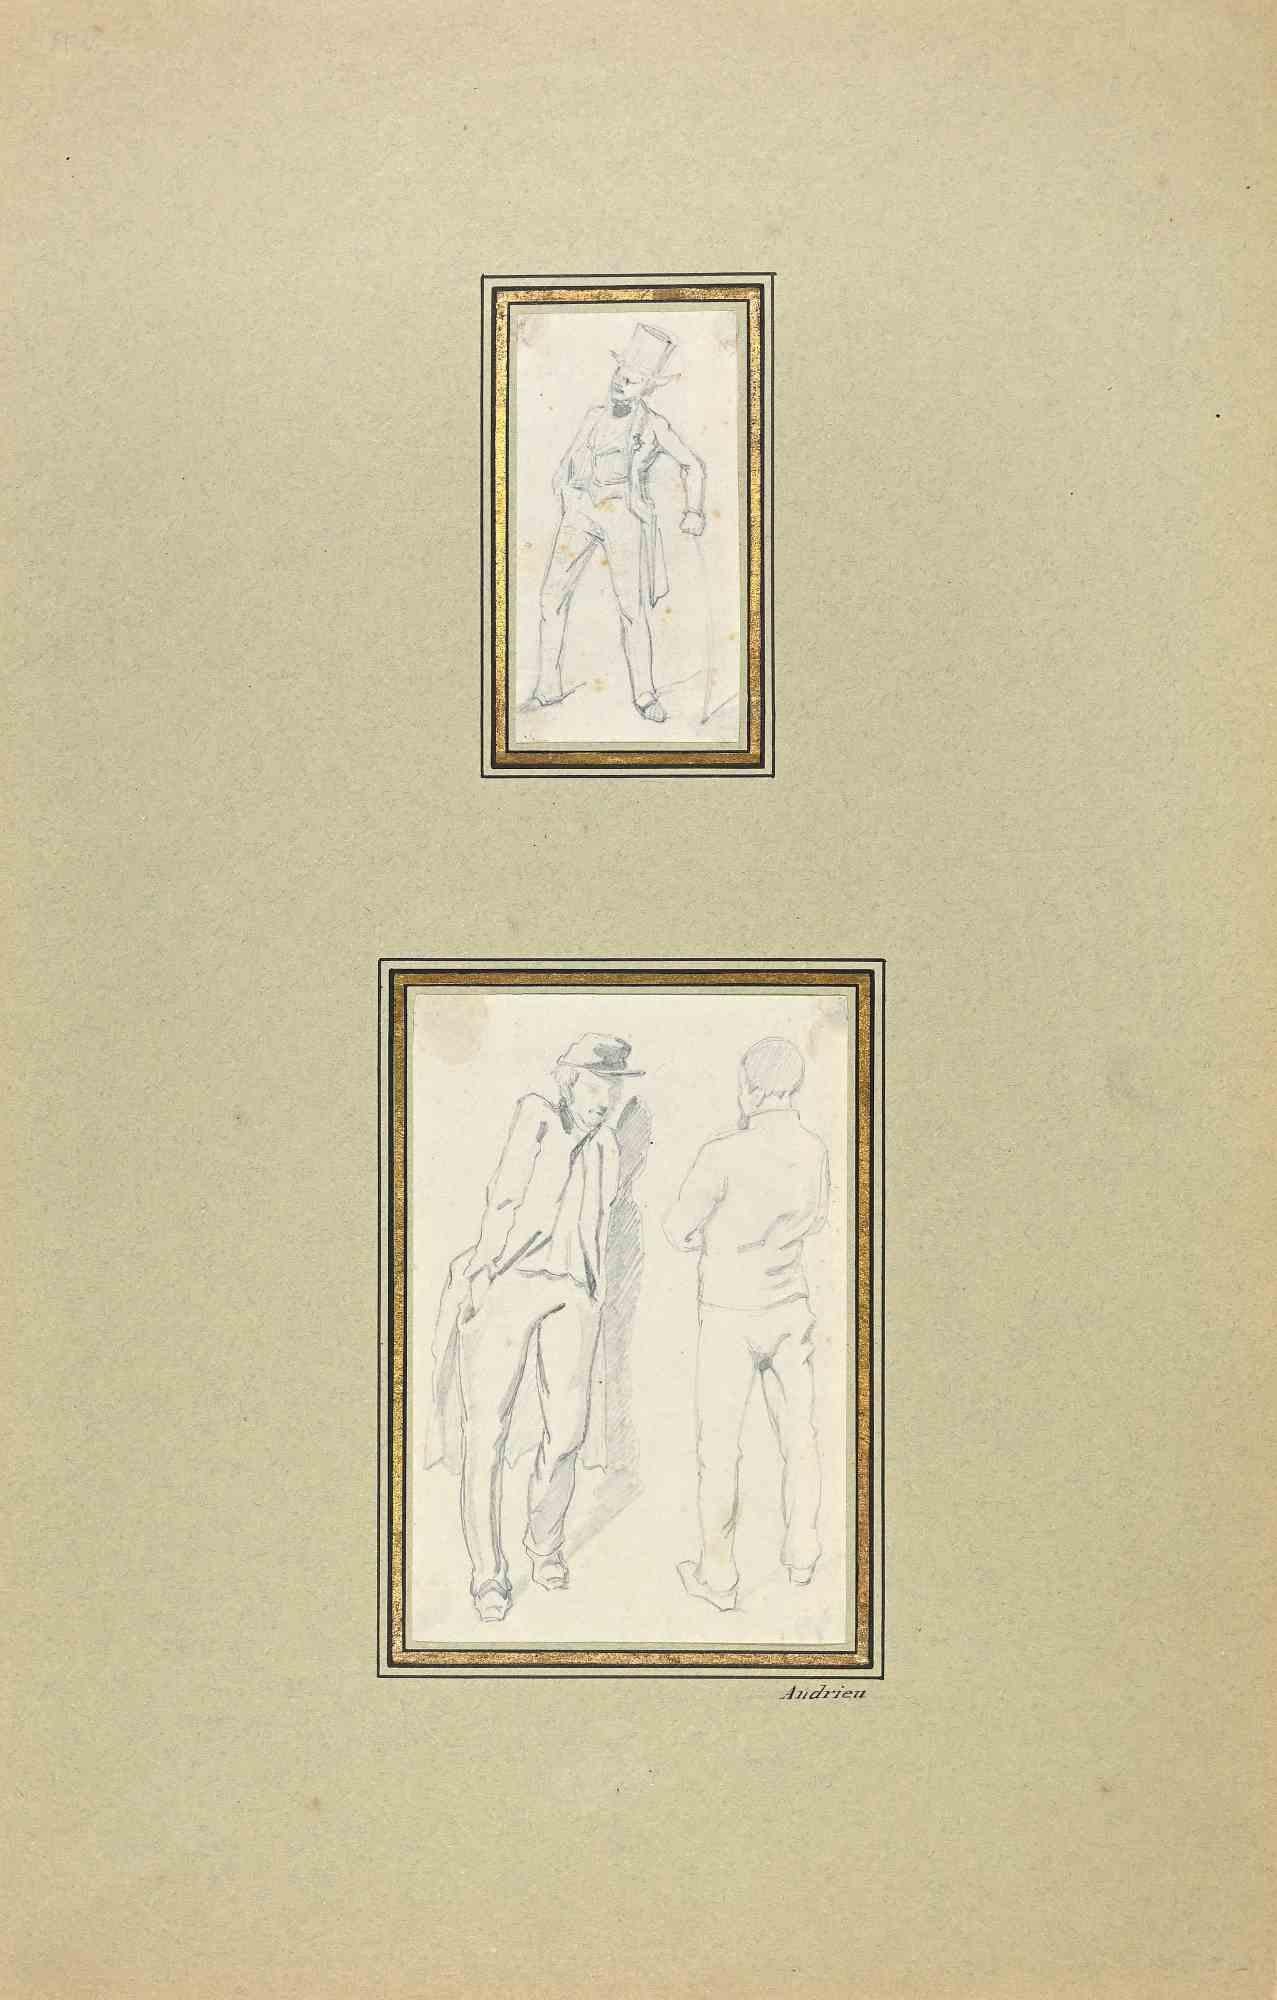 Figures est un dessin original au crayon réalisé par Pierre Andrieu (1821-1892).

Les deux petites œuvres d'art représentent des hommes élégants.

Bon état, y compris un carton vert clair.

Timbre signé.

Pierre Andrieu  (1821-1892) fut l'élève du